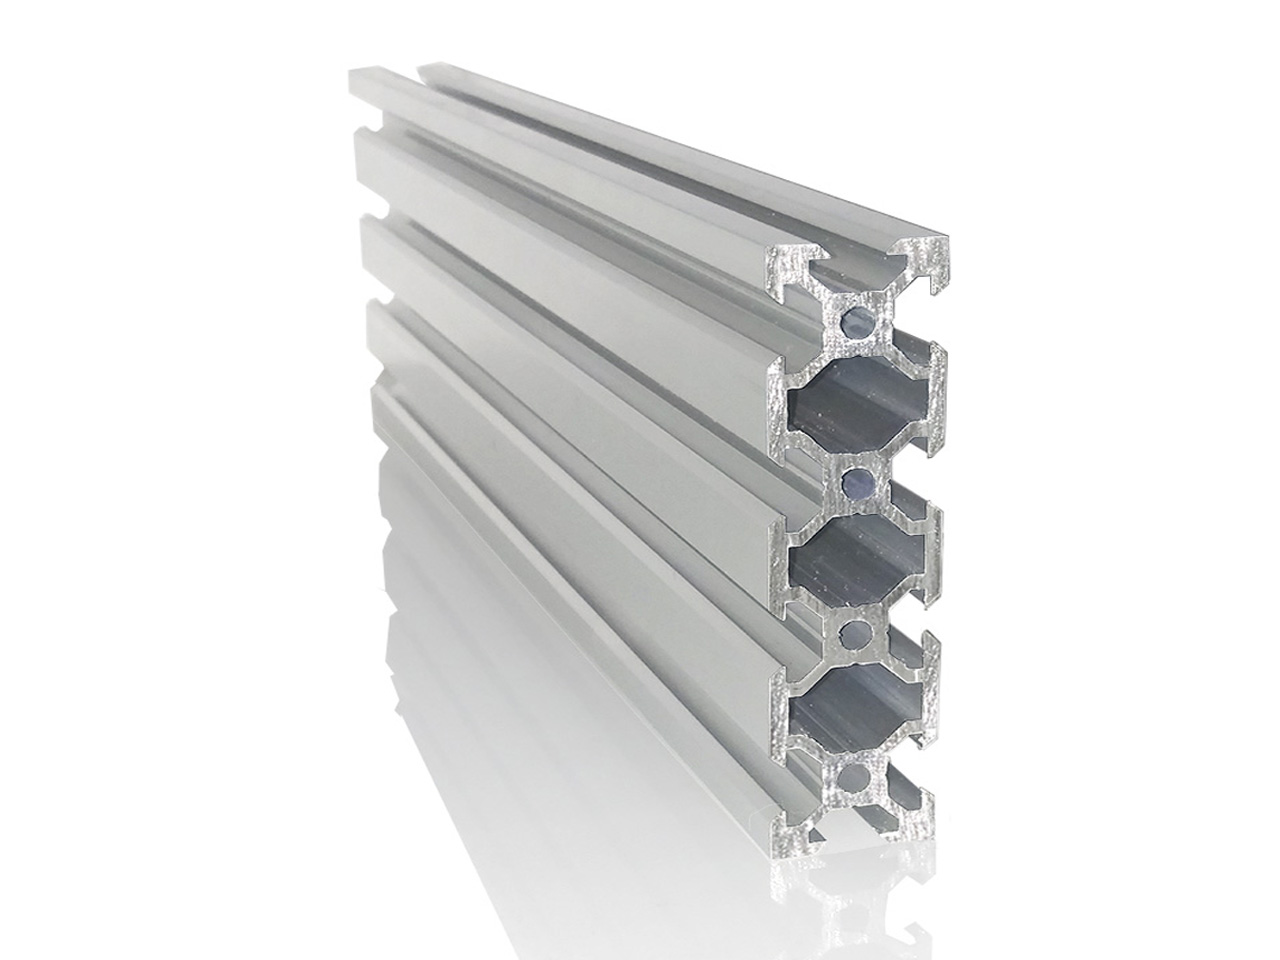 Perfil aluminio estructural 30x30 corte a medida, ADAJUSA